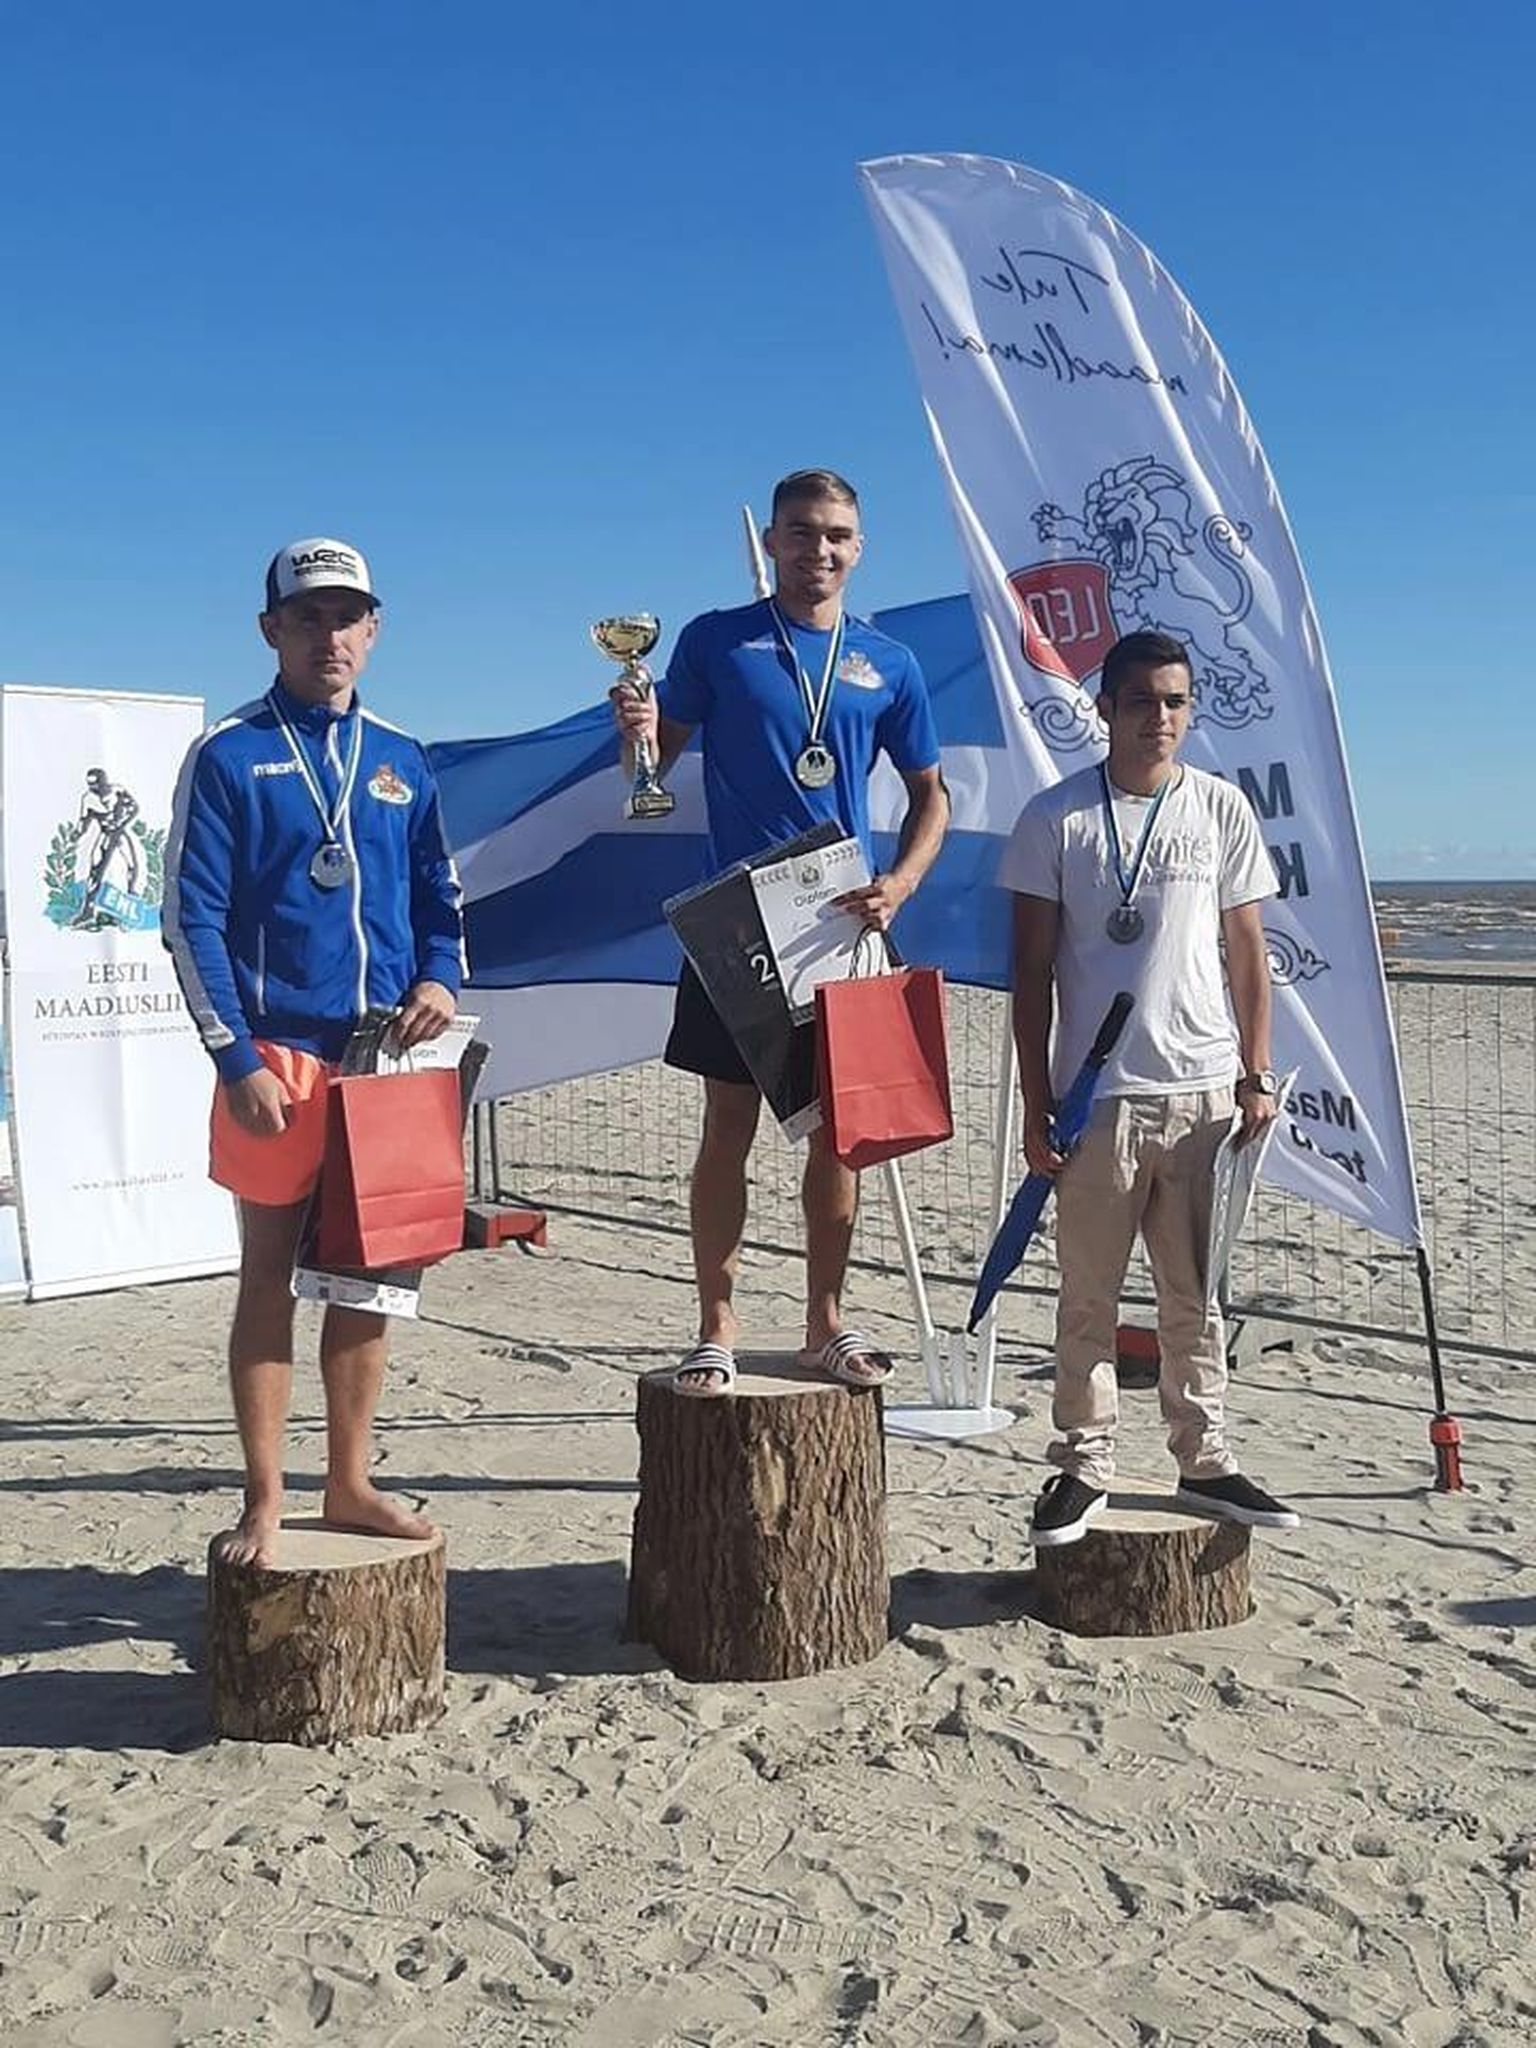 Valga sporiklubi esindav Mark Anissimov (paremal) võitis oma esimese meistrivõistluste medali täiskasvanute arvestuses.